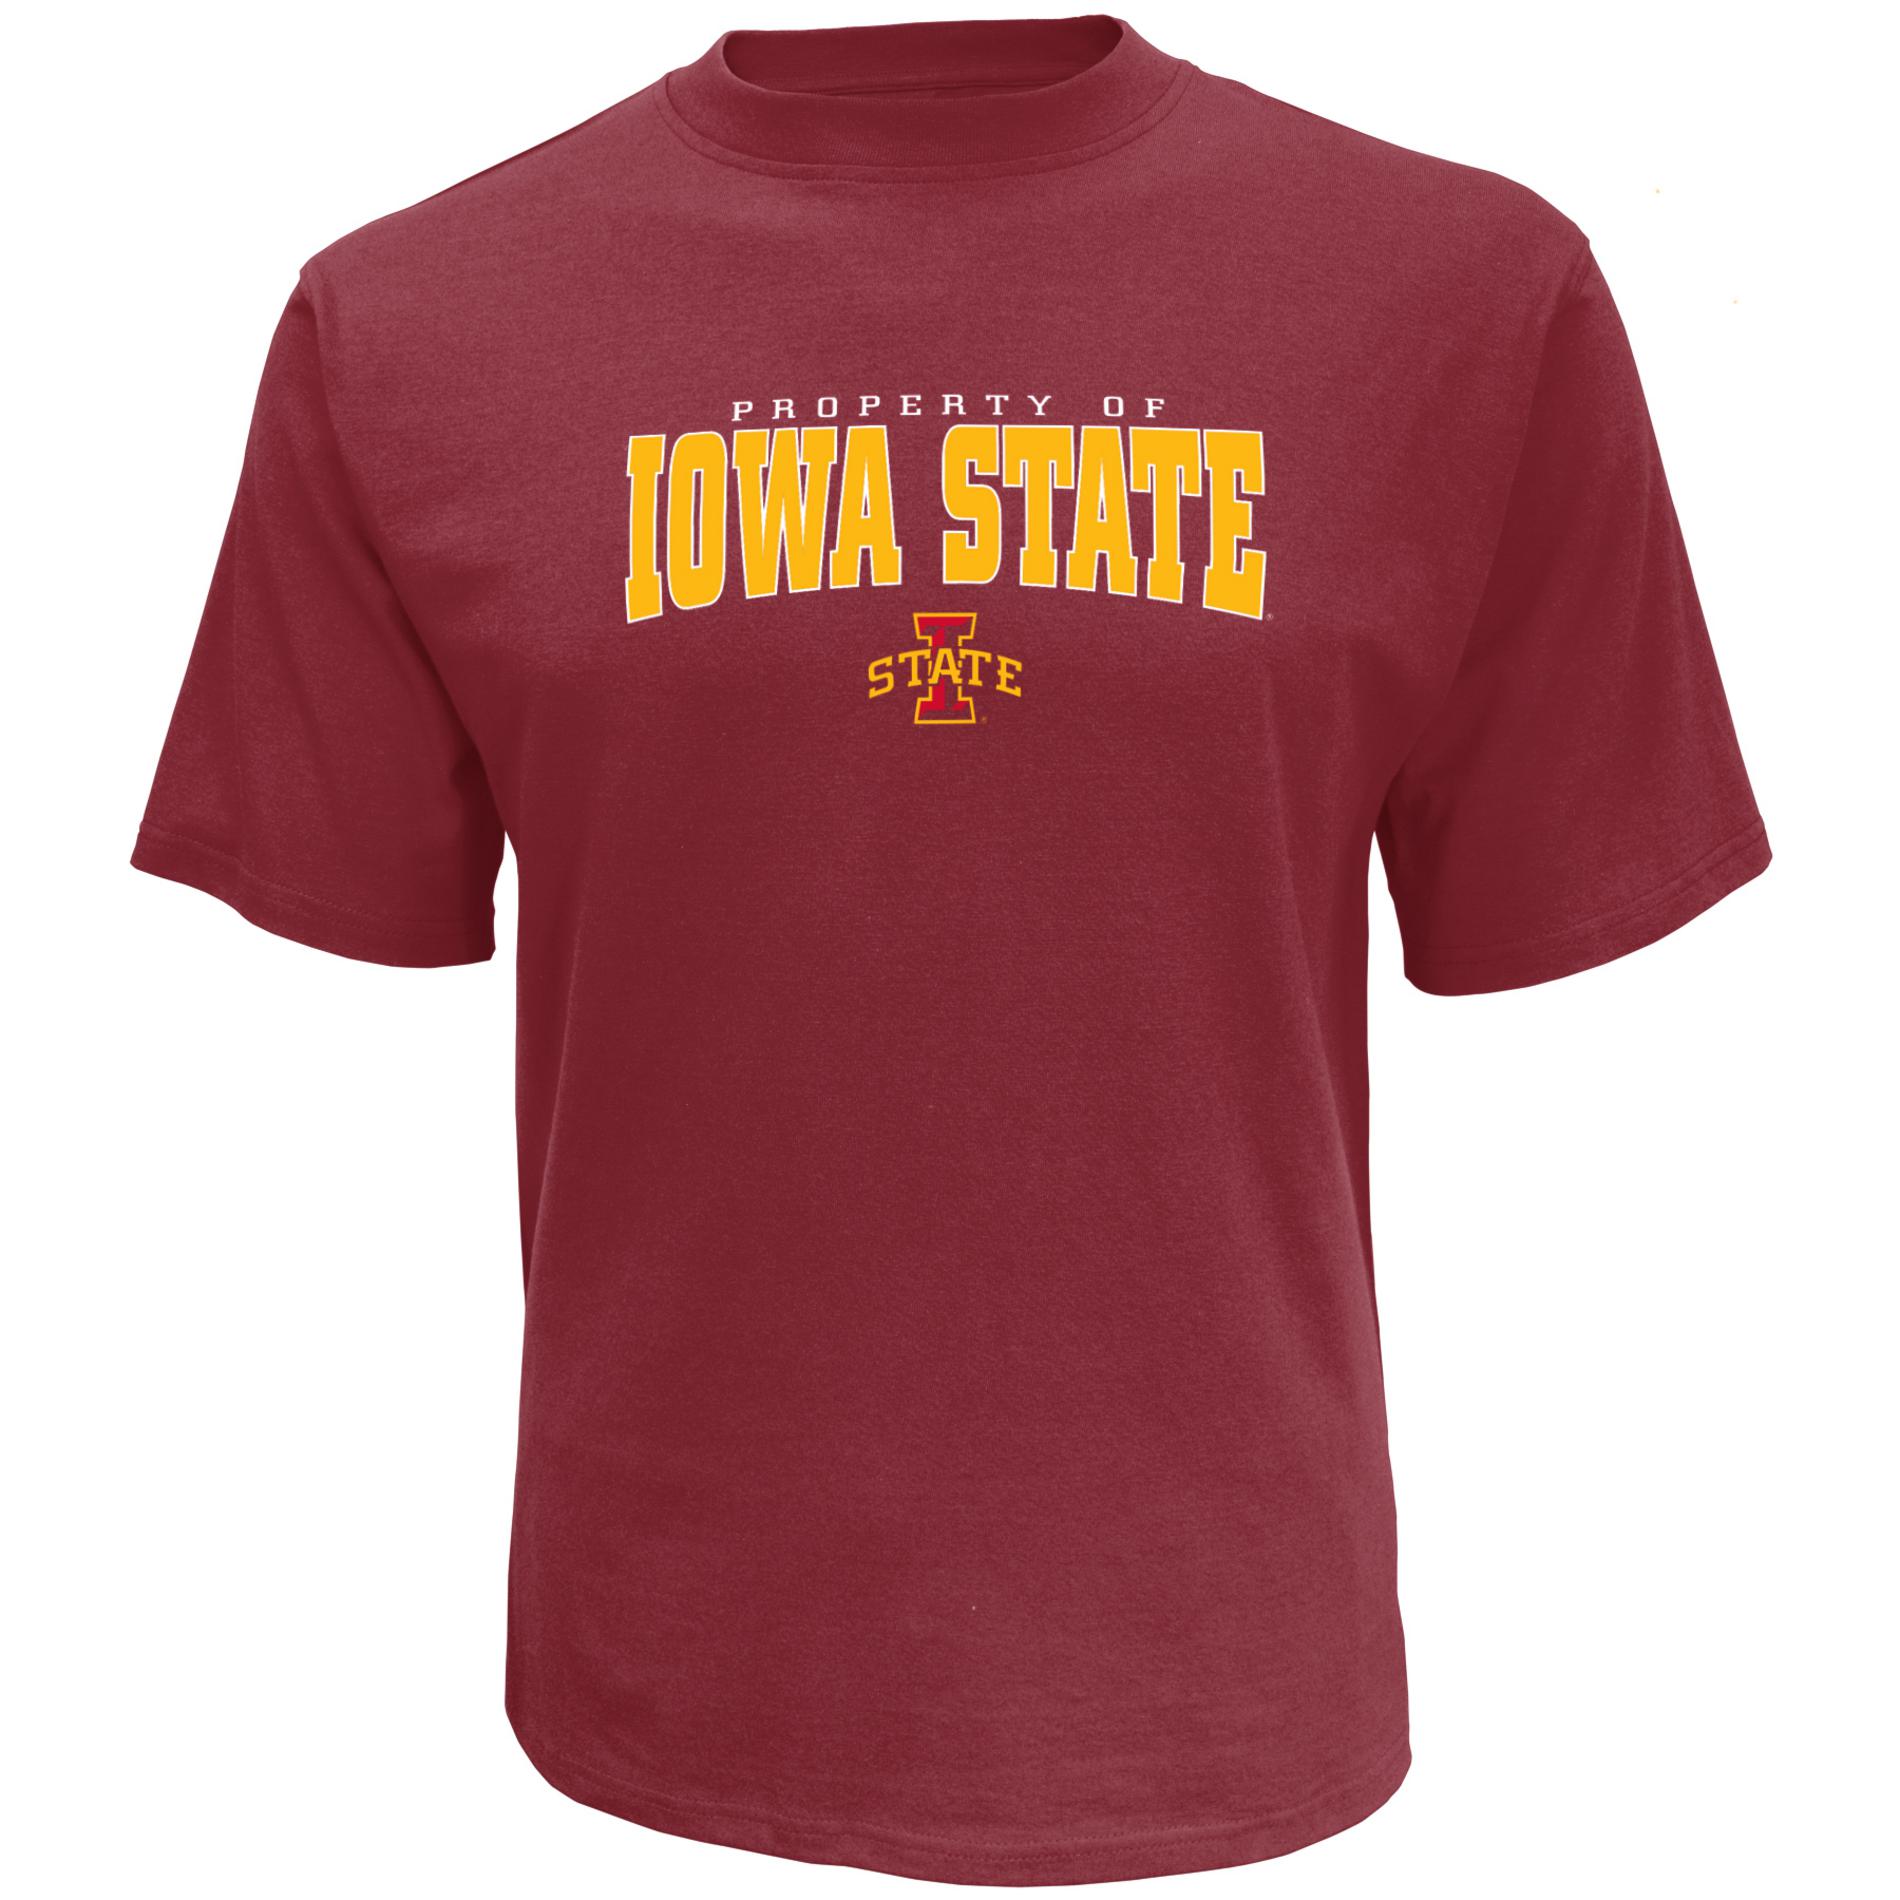 NCAA Men's T-Shirt - Iowa State University Cyclones